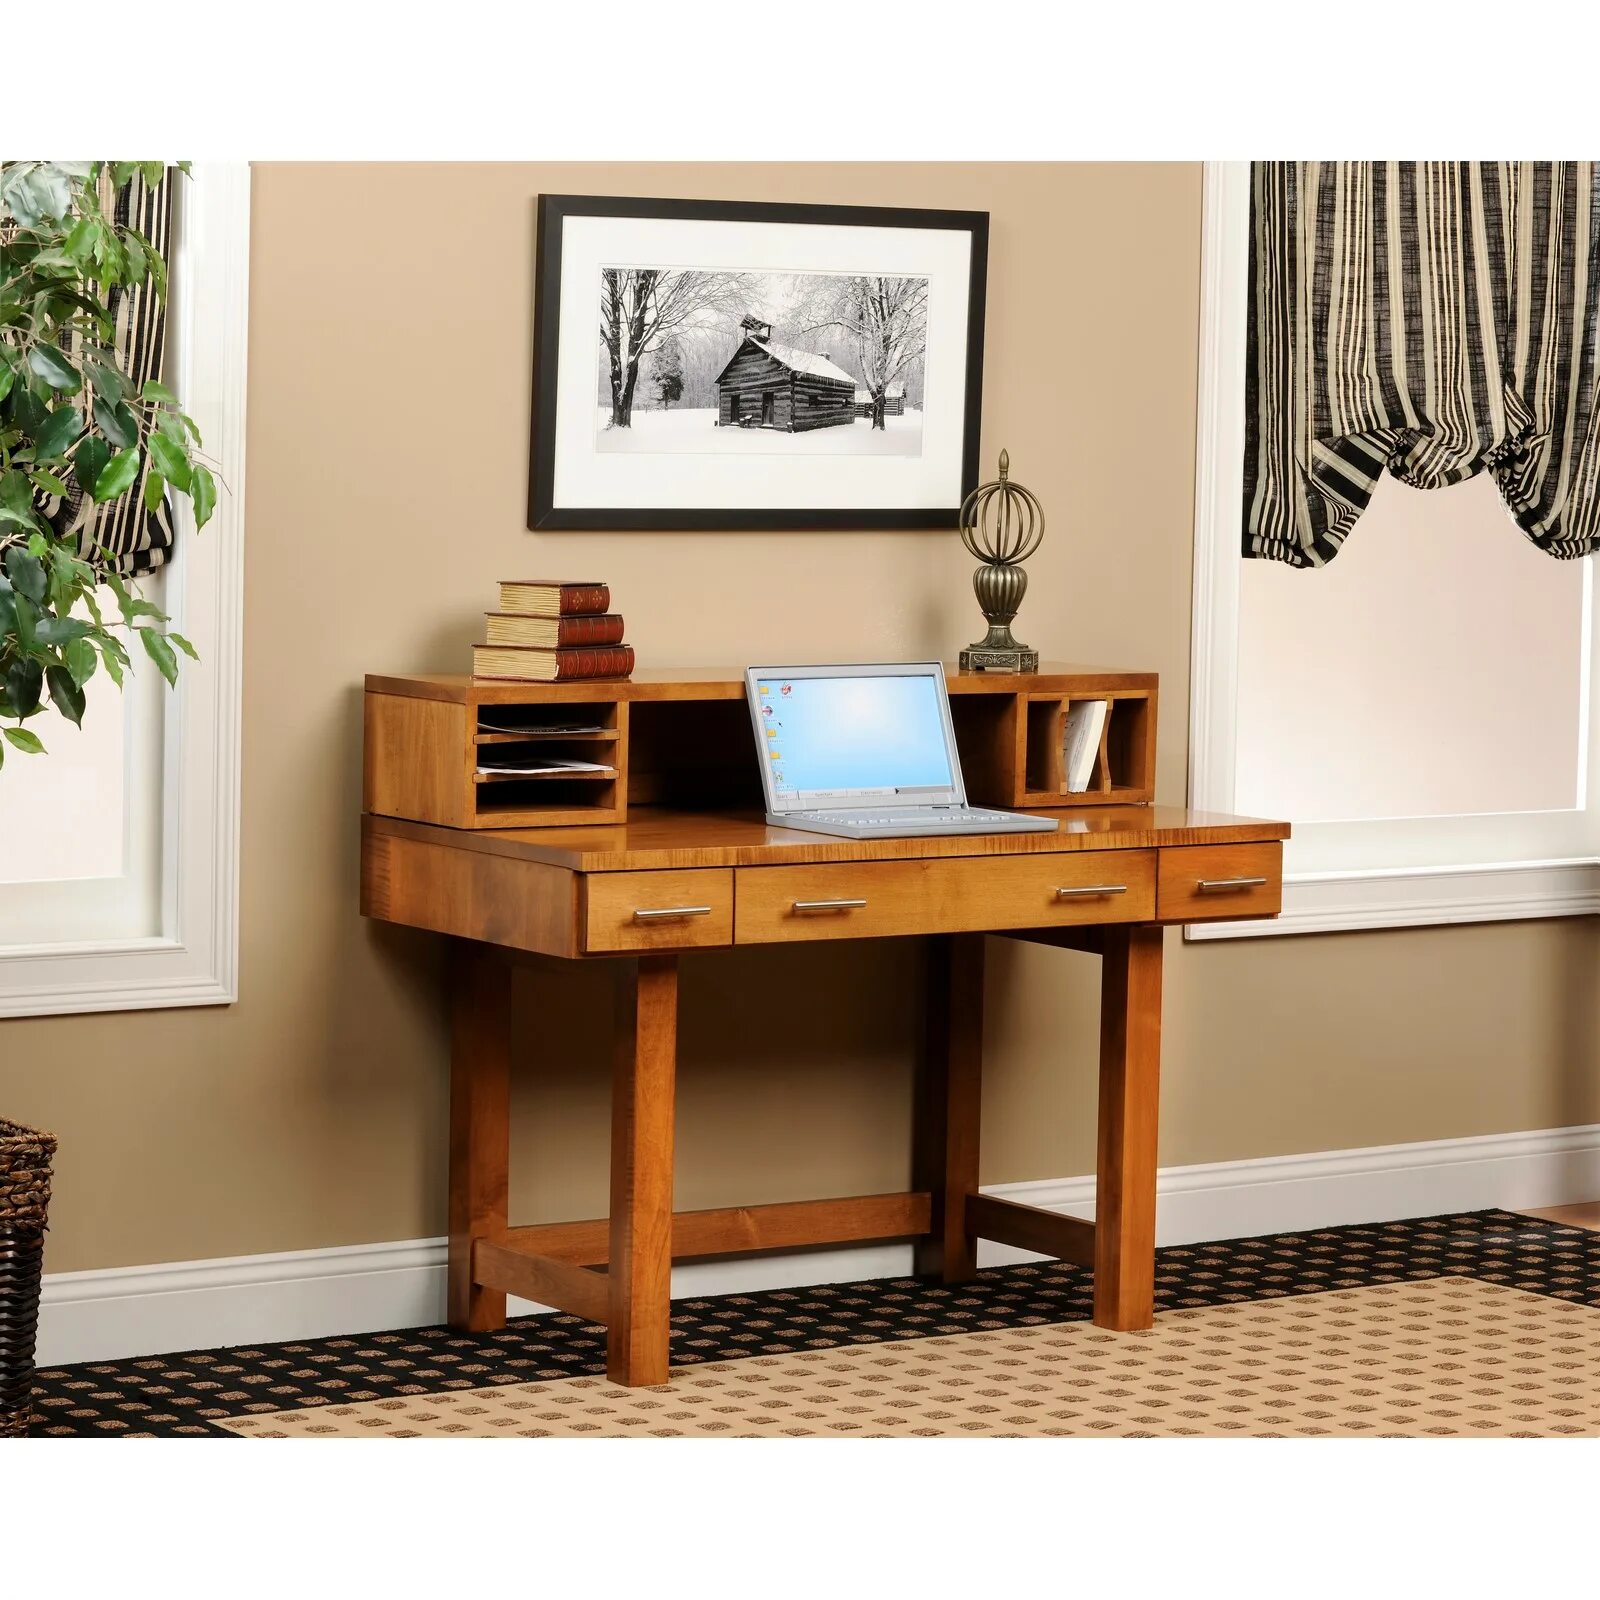 Desk board. Письменный стол в стиле Контемпорари. Компьютерный стол Вуд. Desk. Красный дуб мебель кабинет.